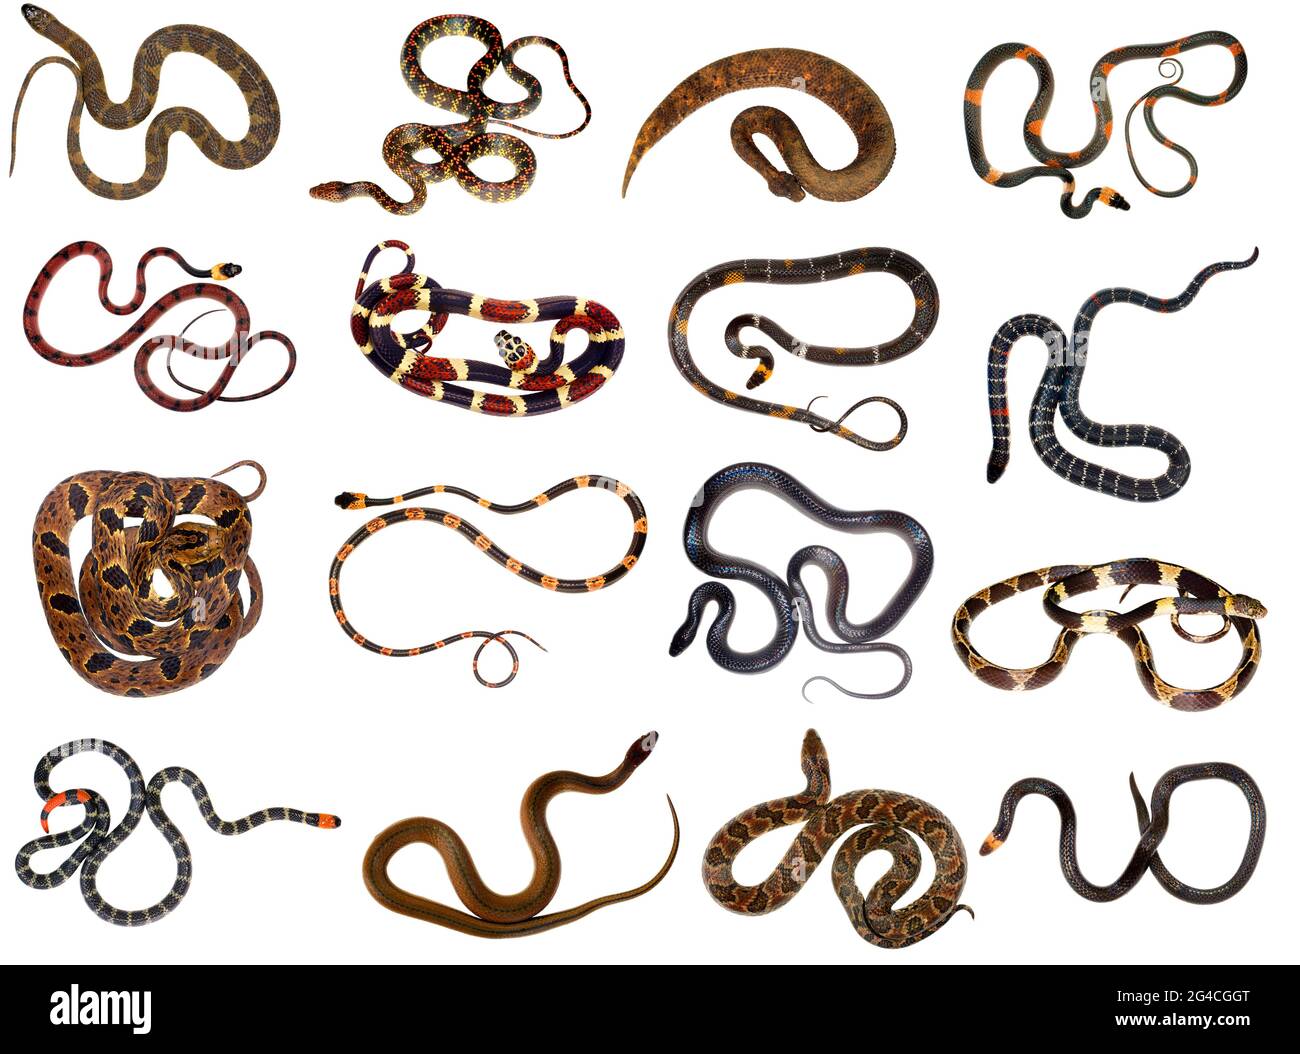 Colección de serpientes de la selva amazónica Foto de stock